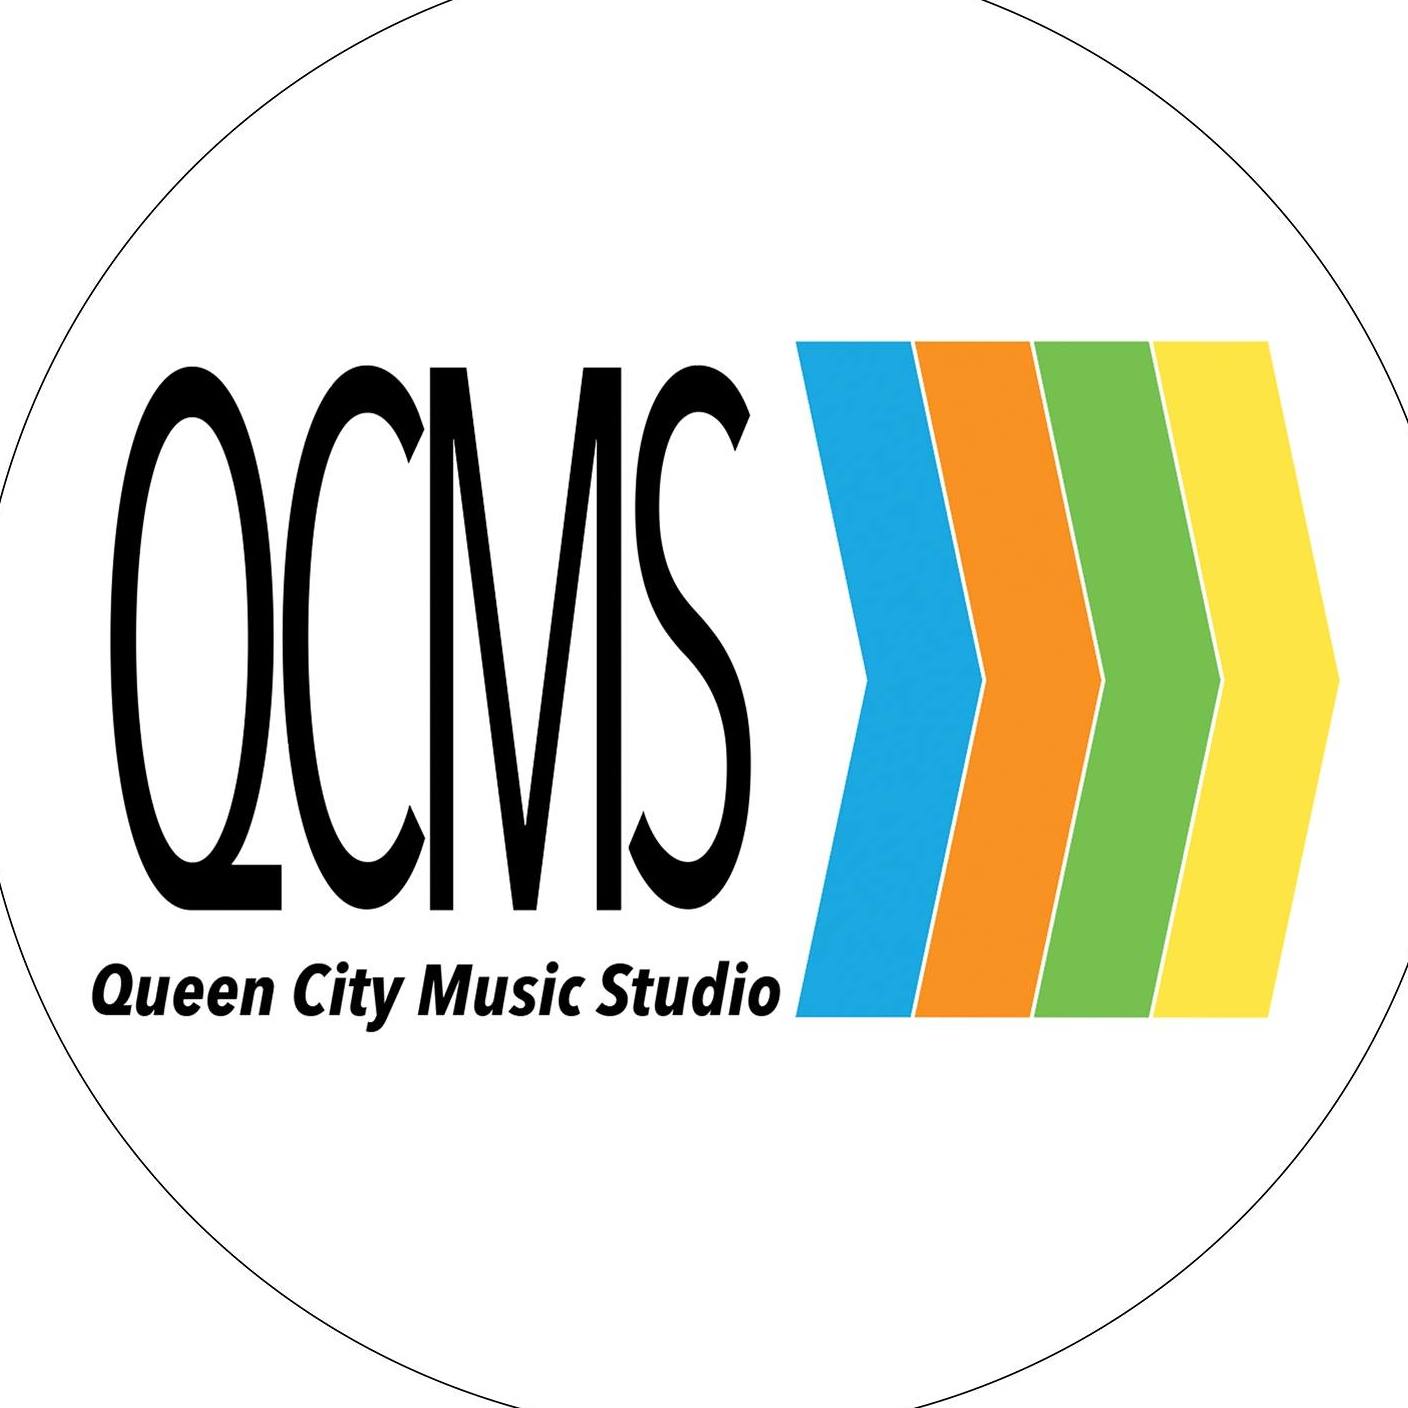 Queen City Music Studio